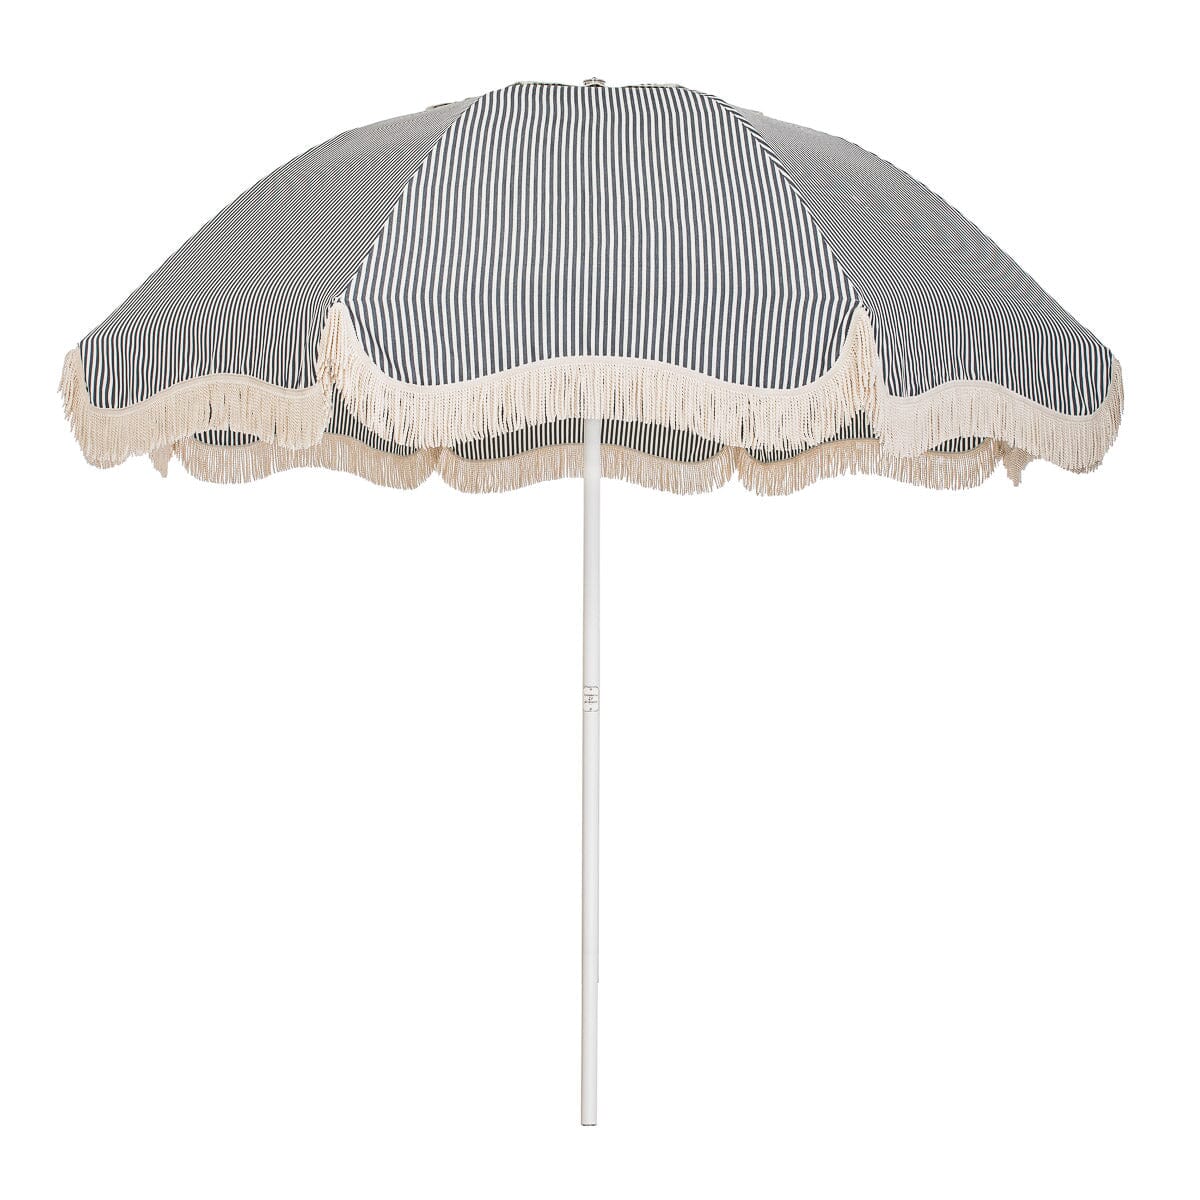 The Patio Umbrella - Lauren's Navy Stripe Patio Umbrella Business & Pleasure Co Aus 